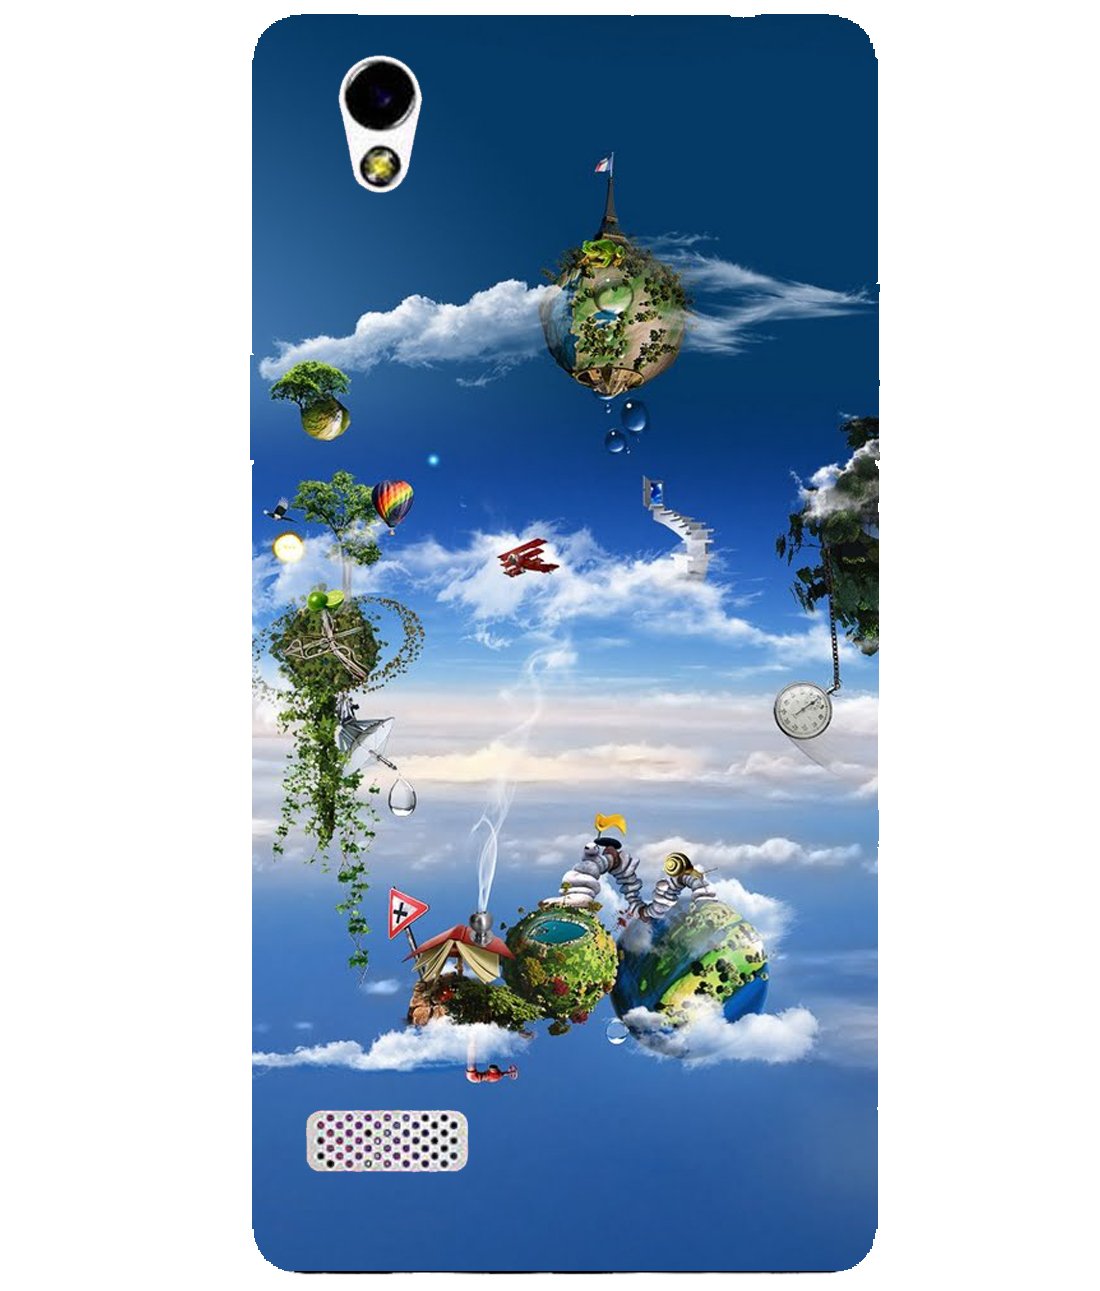 Csk Windows 10 Wallpaper 3d Mobile Case Cover For Oppo - Island Floating Fantasy Art - HD Wallpaper 